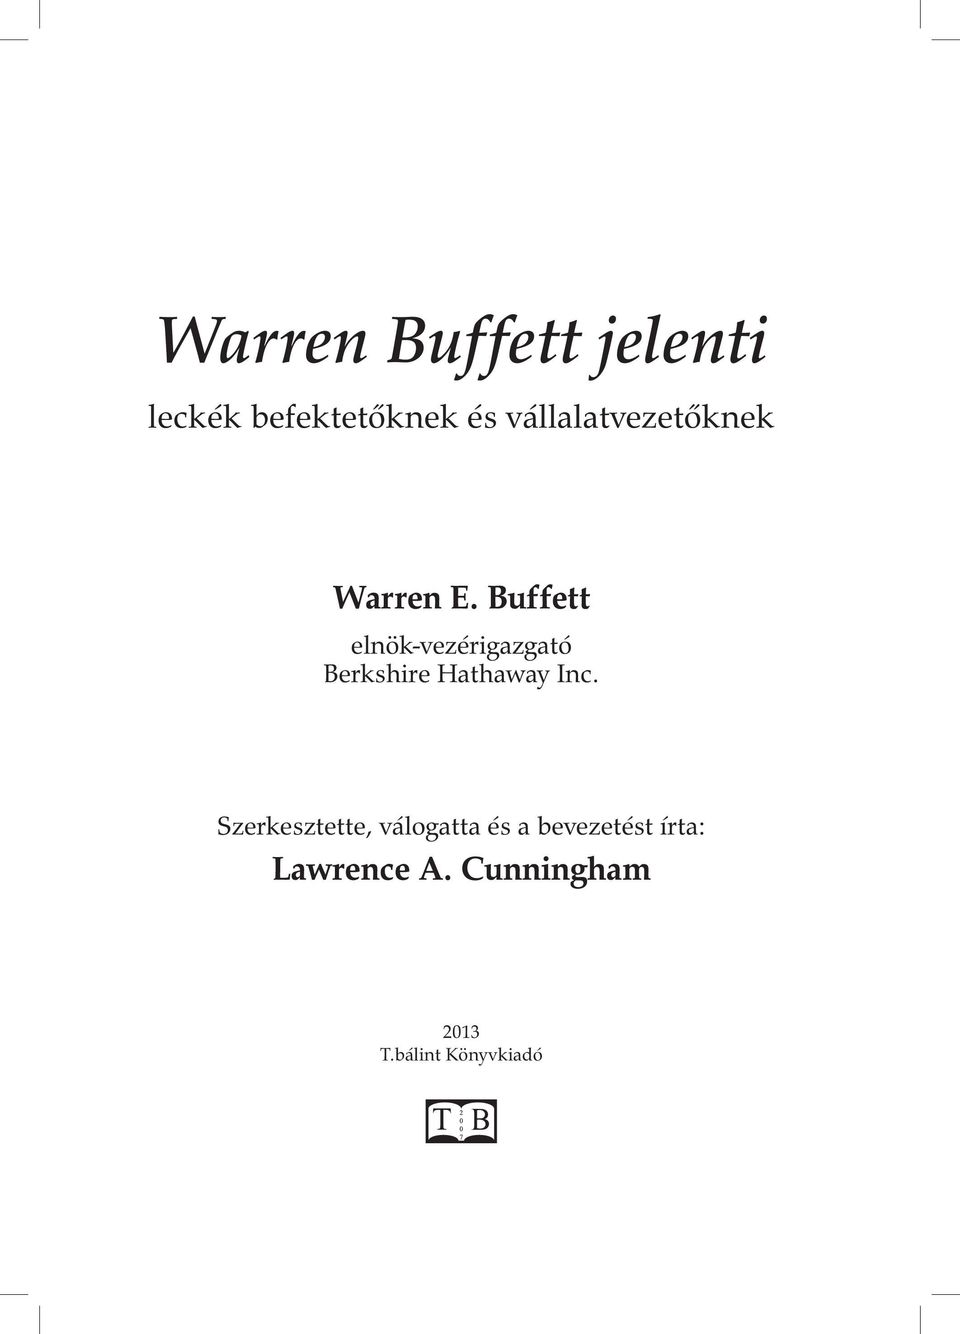 Buffett elnök-vezérigazgató Berkshire Hathaway Inc.